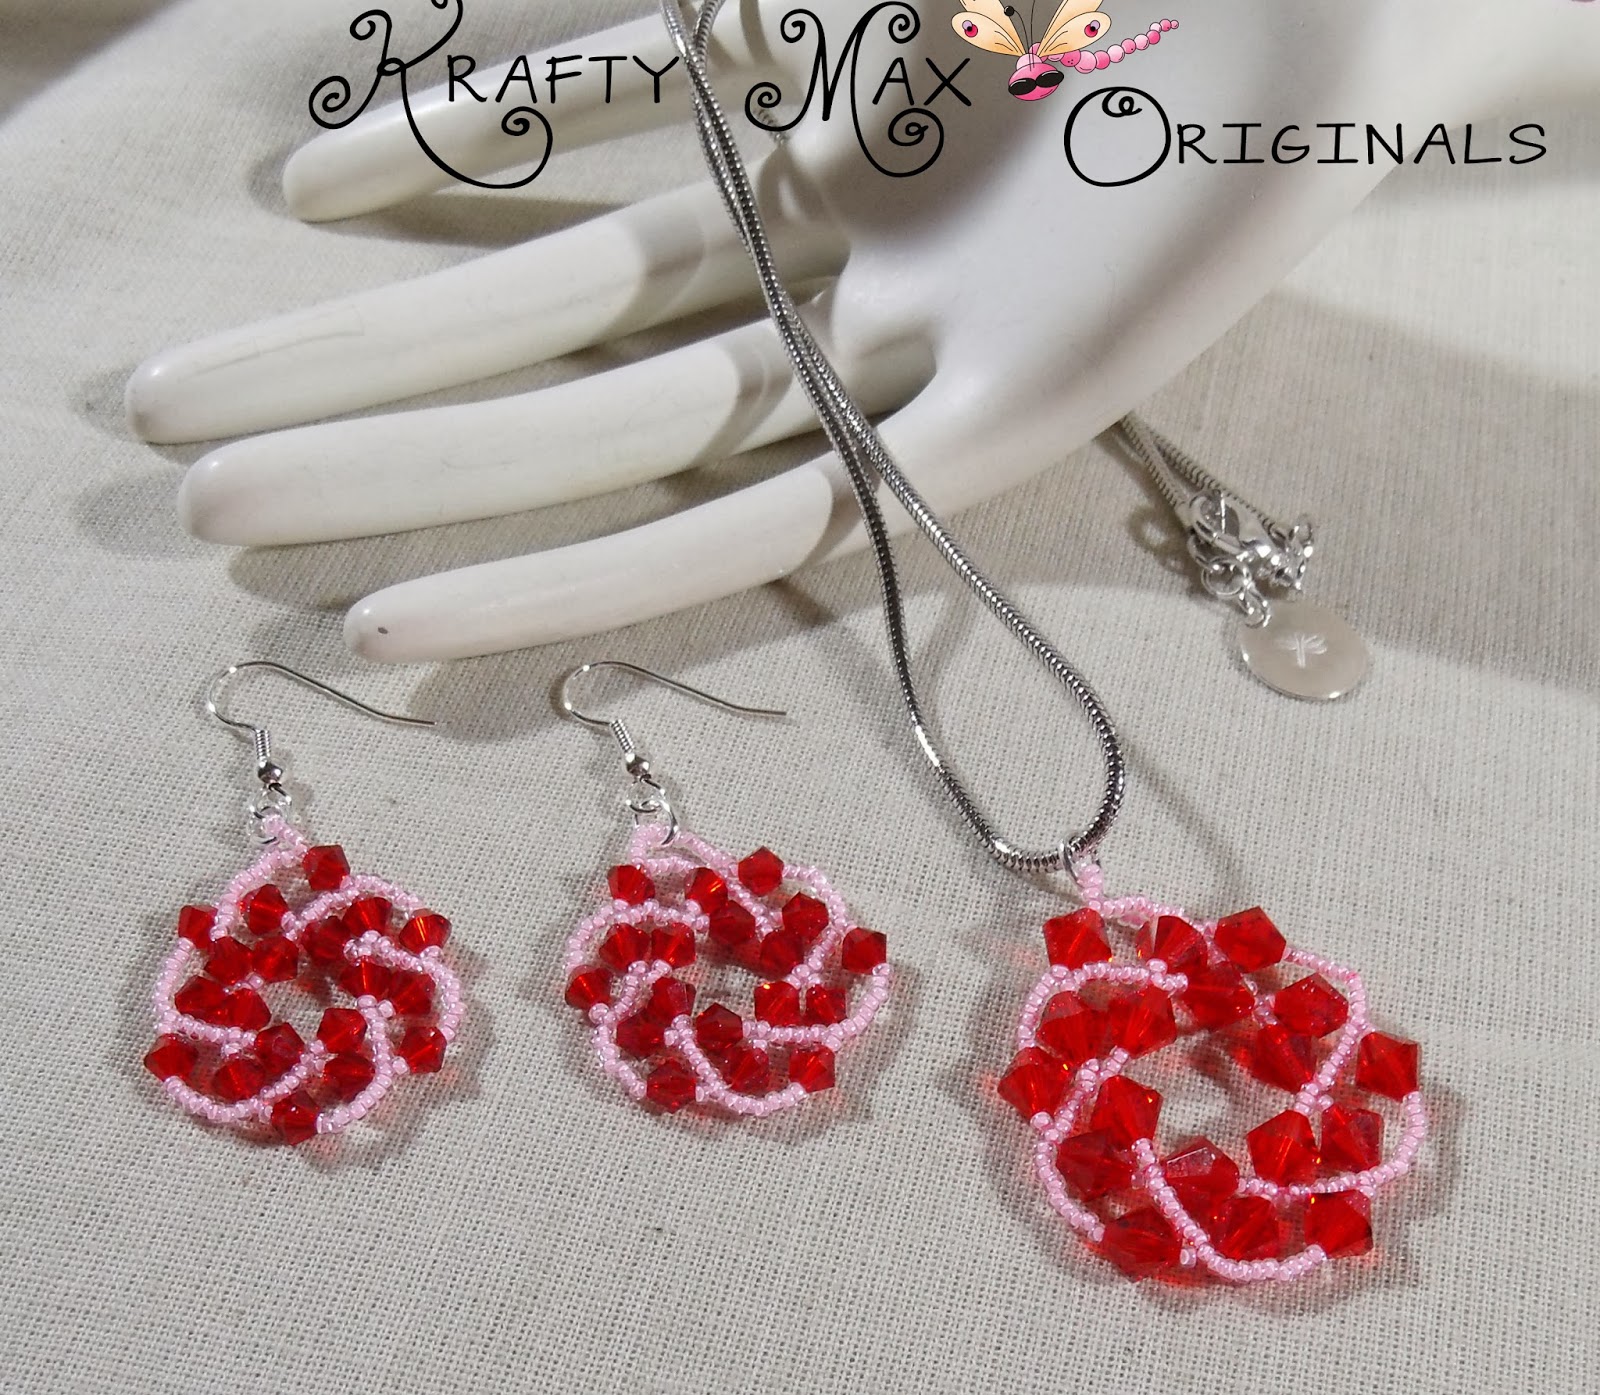 http://www.artfire.com/ext/shop/product_view/KraftyMax/8571719/handmade_swarovski_crystal_earthy_tones_beadwoven_earrings/handmade/jewelry/earrings/beadwork